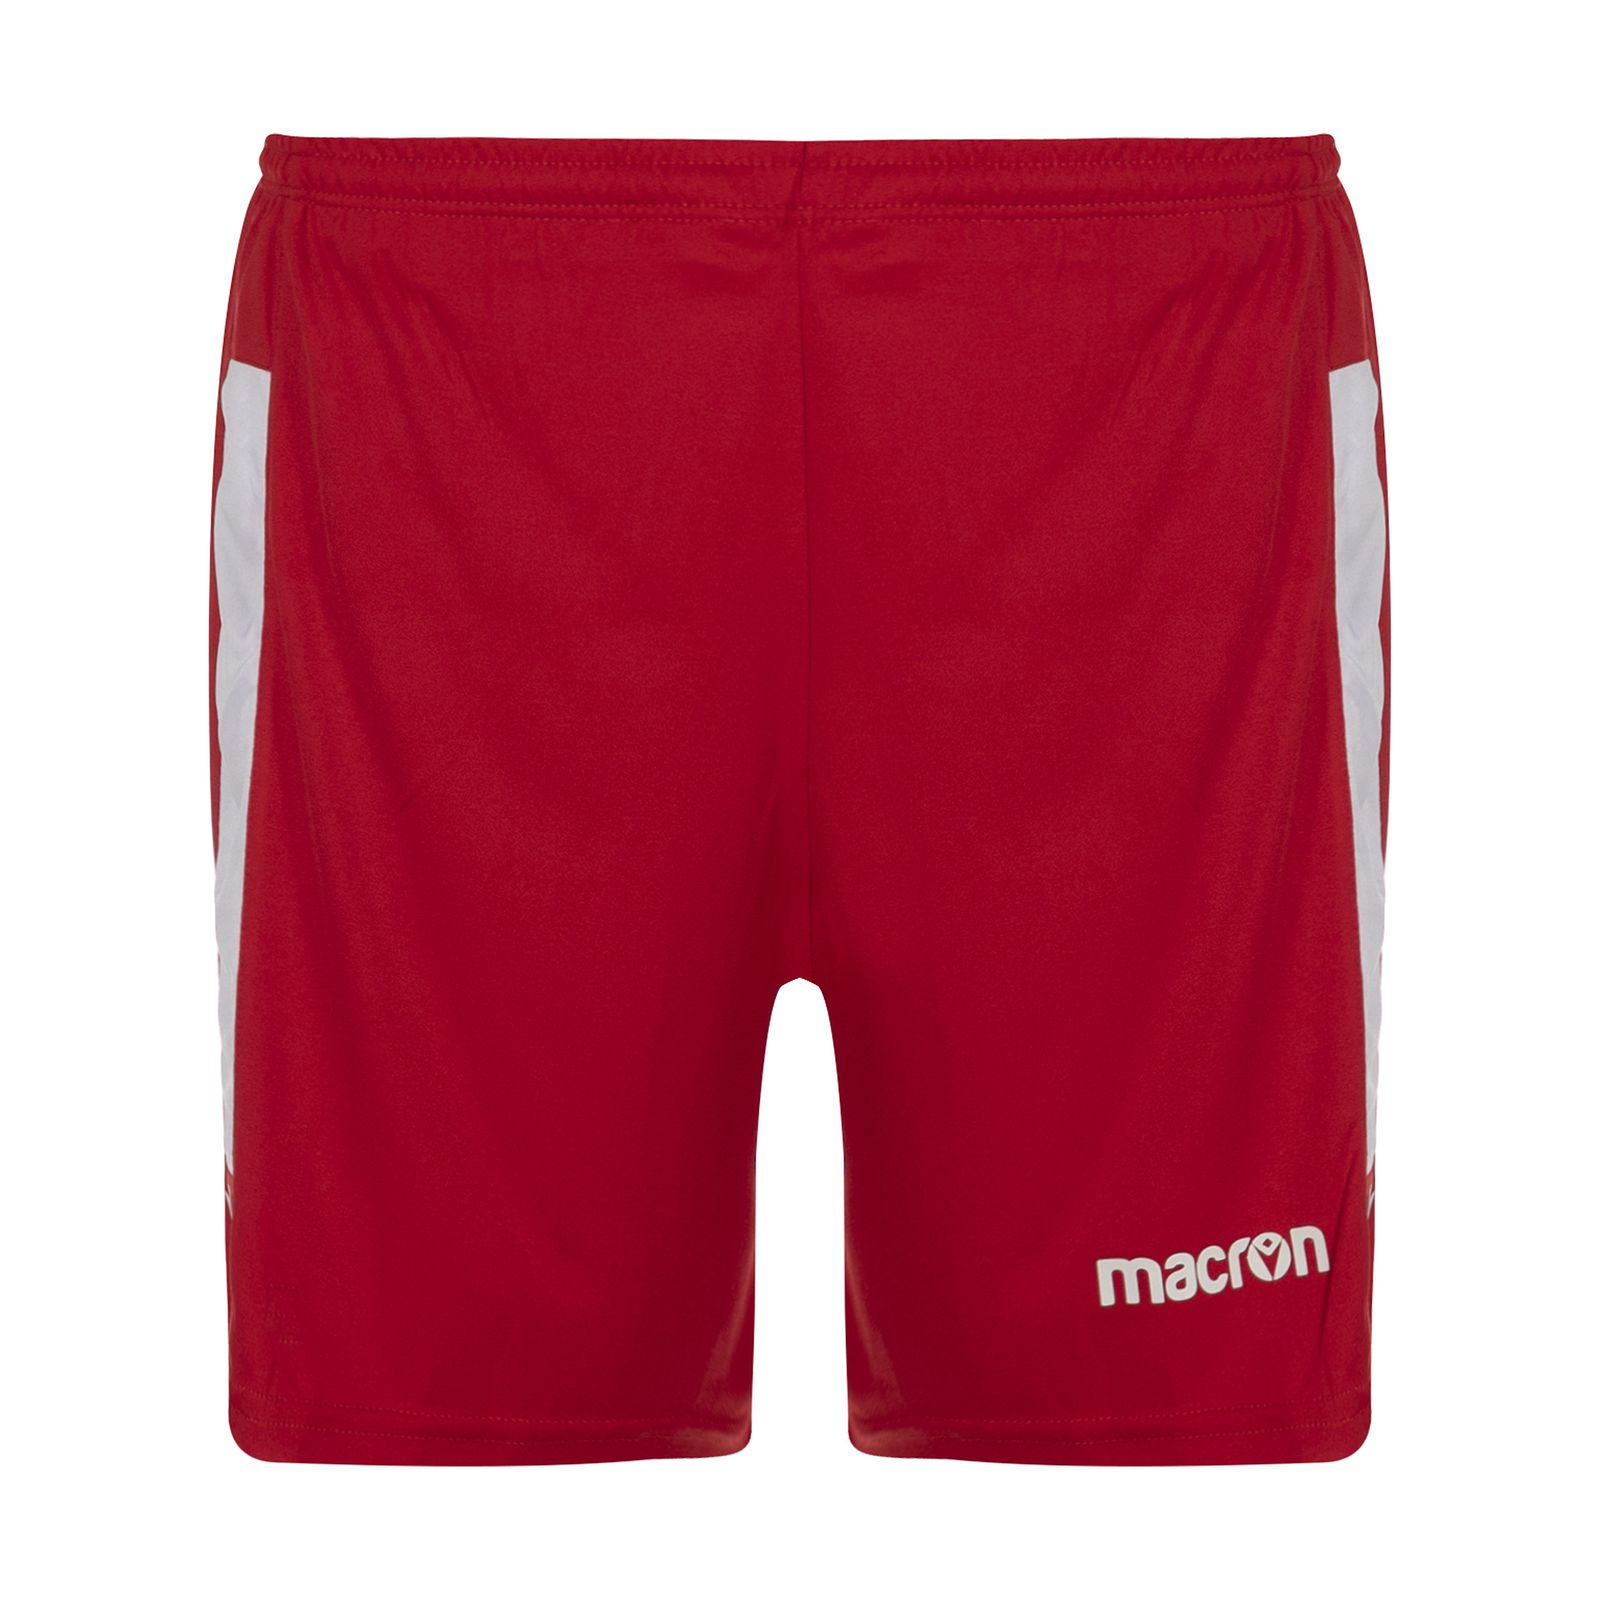 ست تی شرت و شلوارک ورزشی مردانه مکرون مدل کاناپوس رنگ قرمز -  - 3